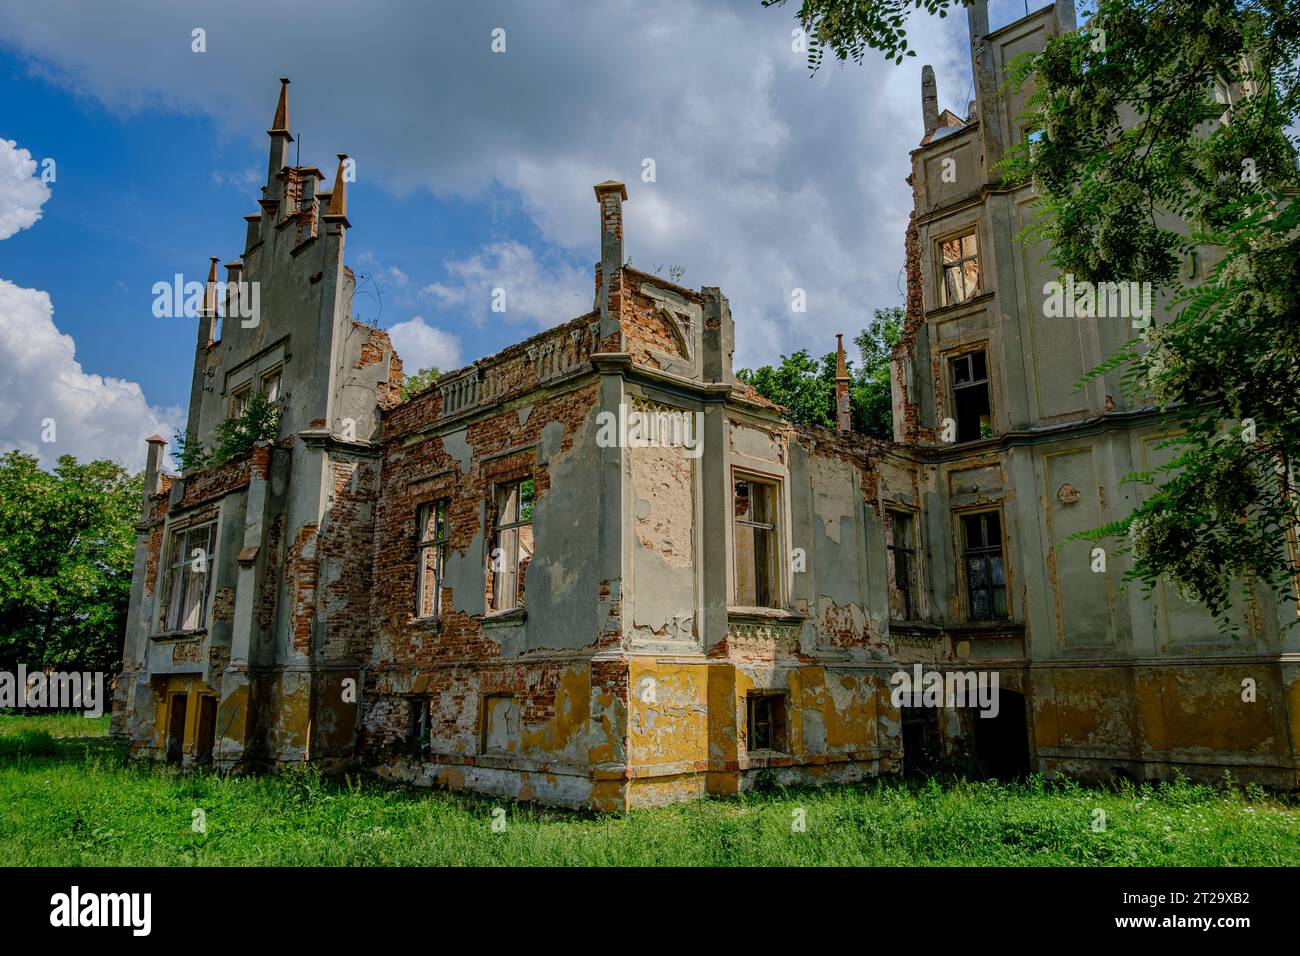 La rovina di Rosen Manor, un edificio neogotico della seconda metà del XIX secolo, a Roznow (Rosen), nel voivodato di Opole, in Polonia. Foto Stock